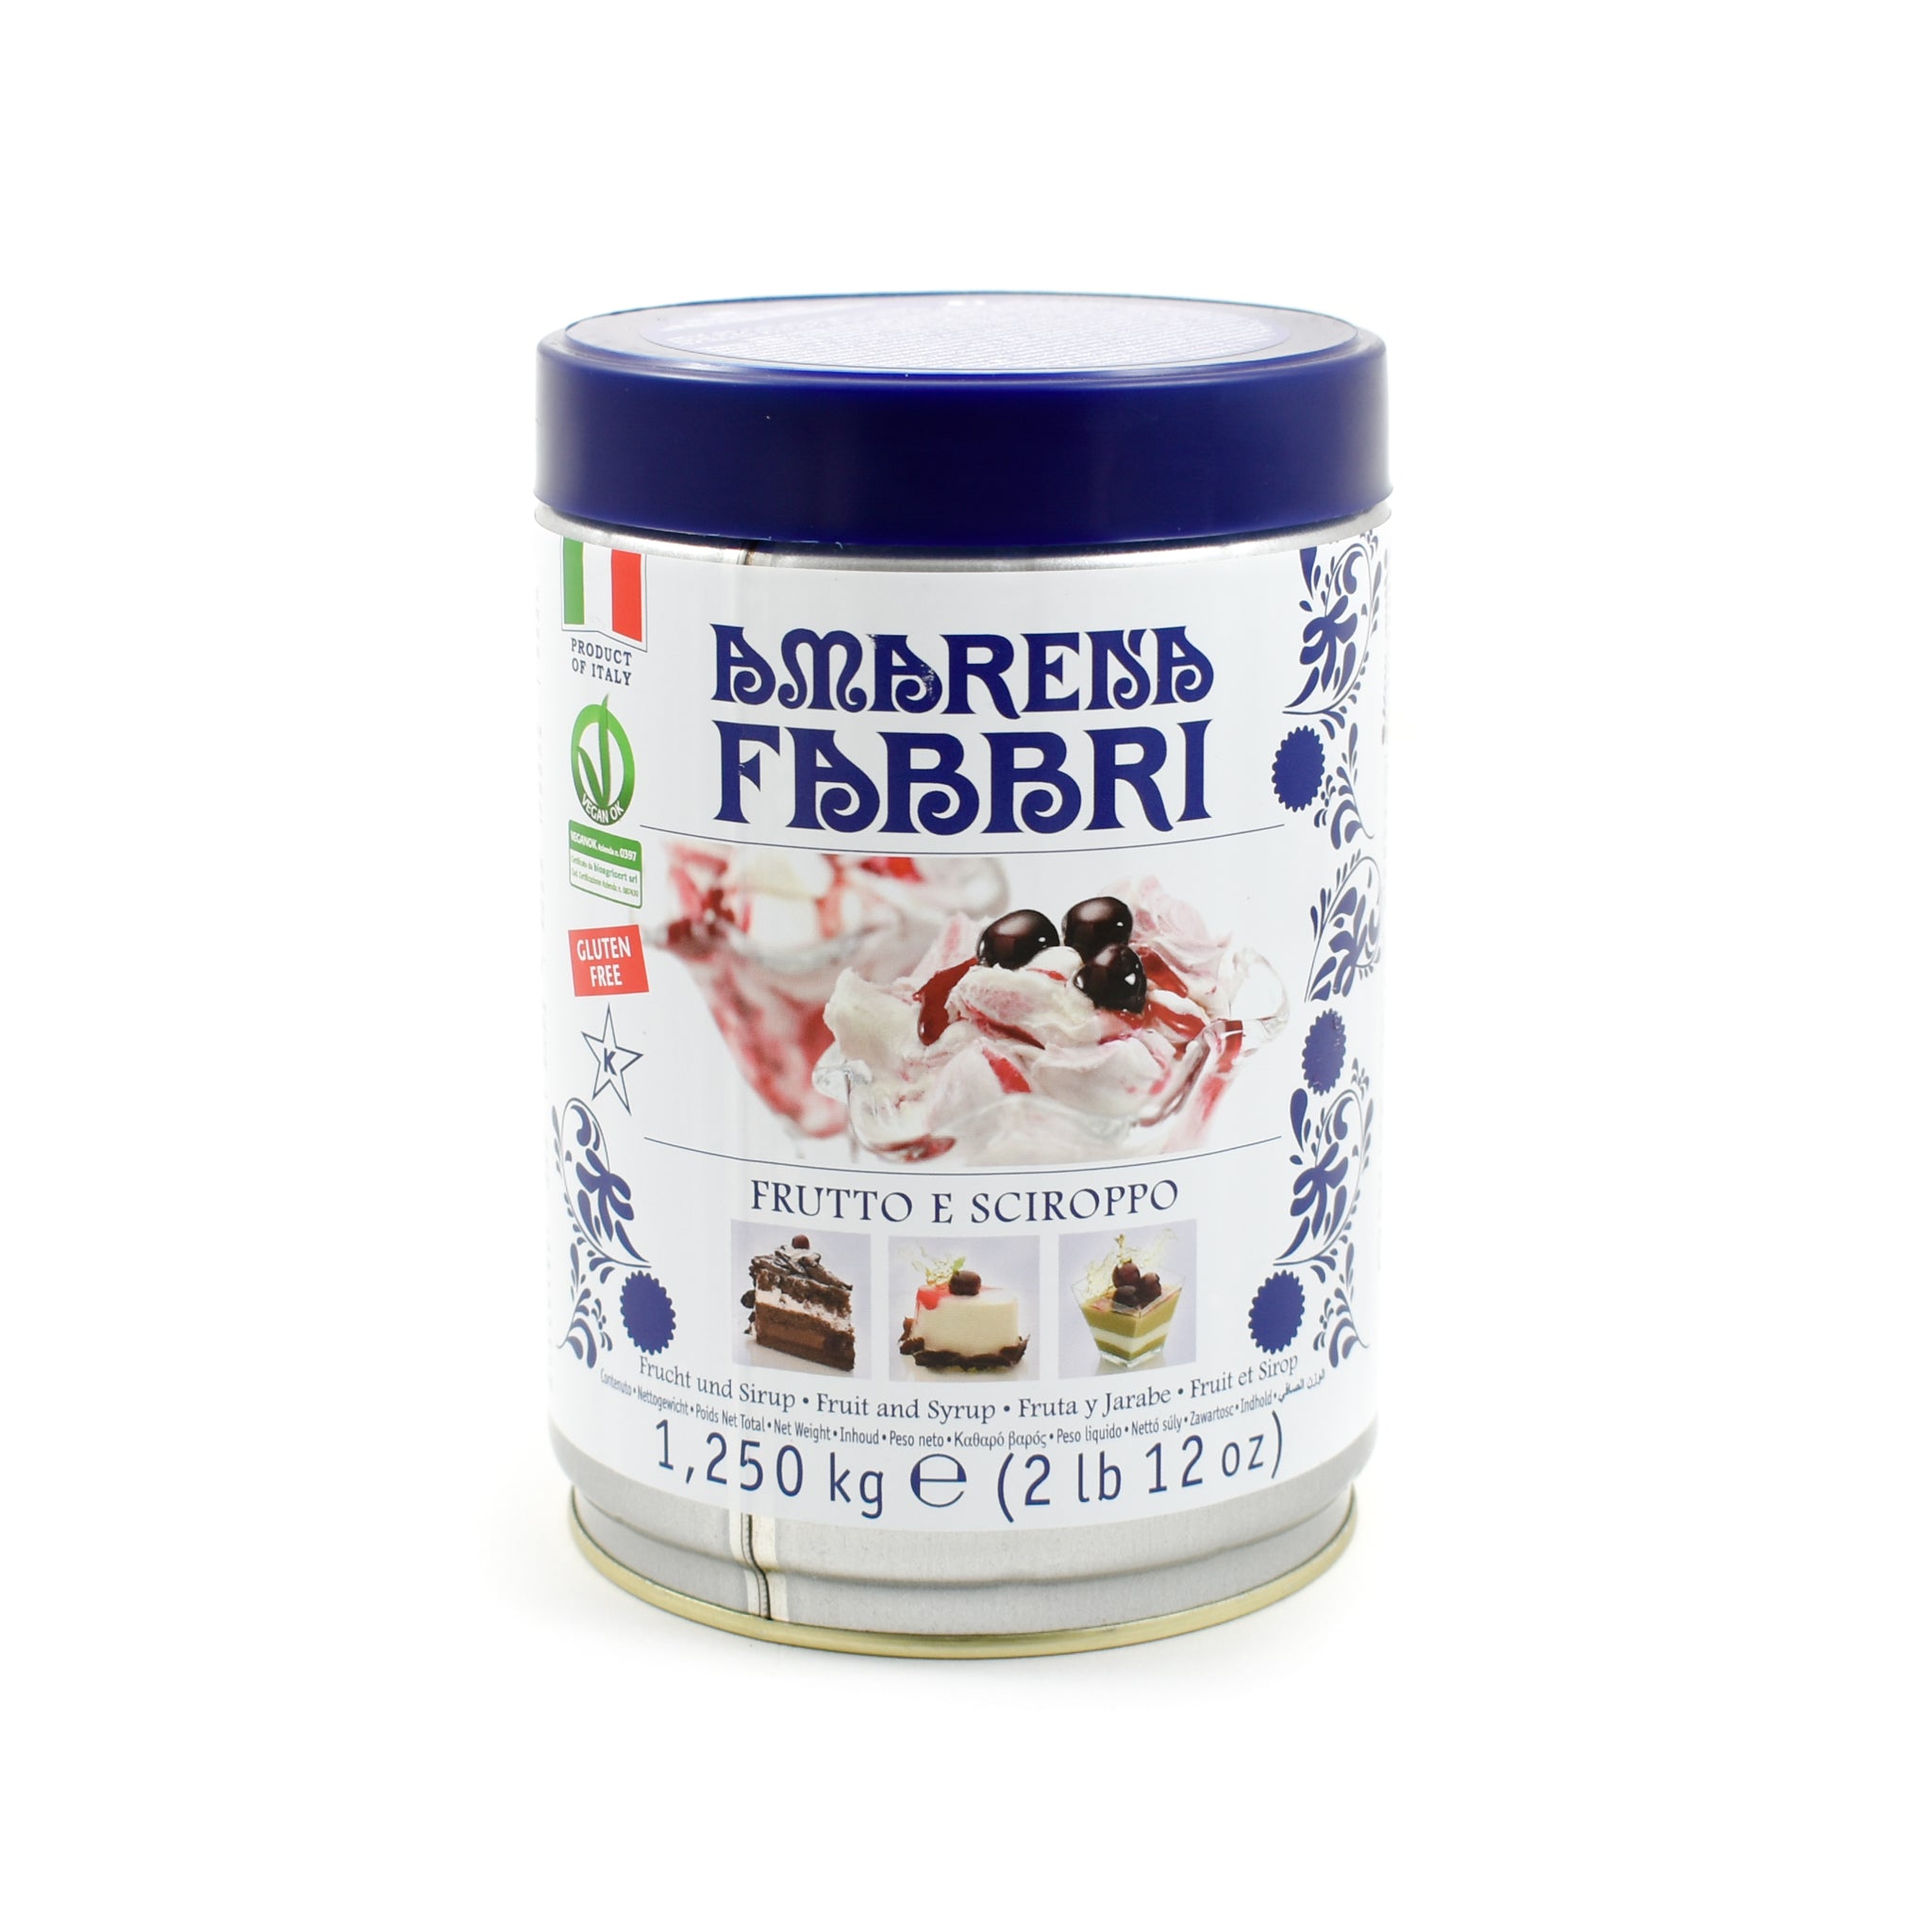 Fabbri Amarena Cherries in Syrup - 1.25kg Ingredients Baking Ingredients Dried & Preserved Fruit Italian Food